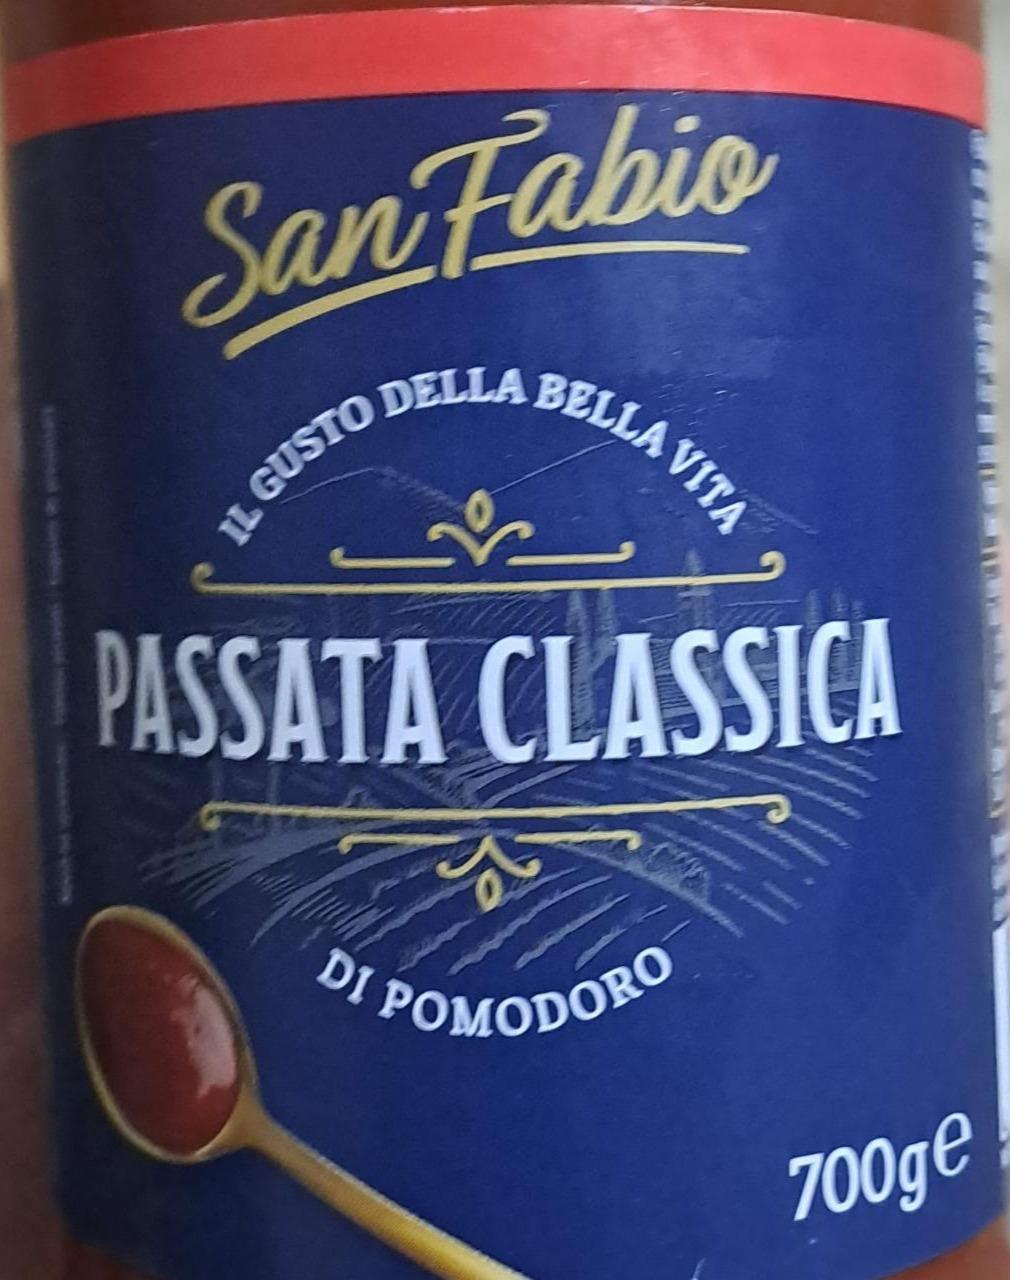 Fotografie - passata classica di pomodoro San Fabio